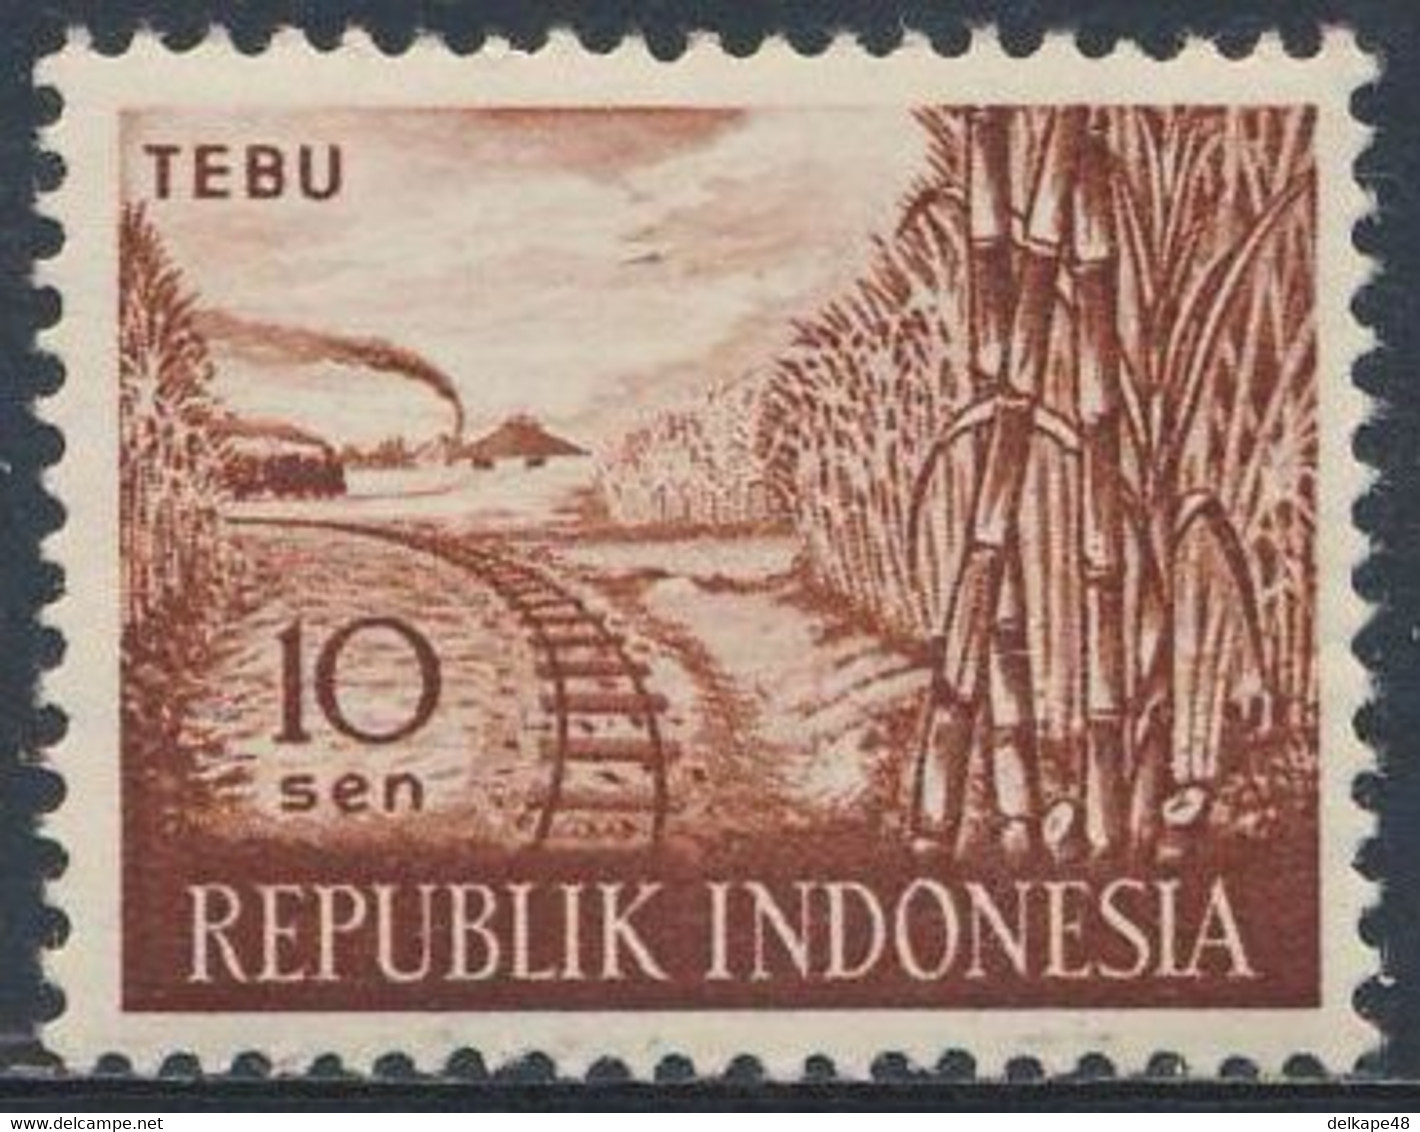 Indonesia Indonesie 1960 Mi 270 Sc 269 SG 831 * MH - Saccharum Officinarum: Sugar Cane + Railway Line / Zuckerrohr - Gemüse